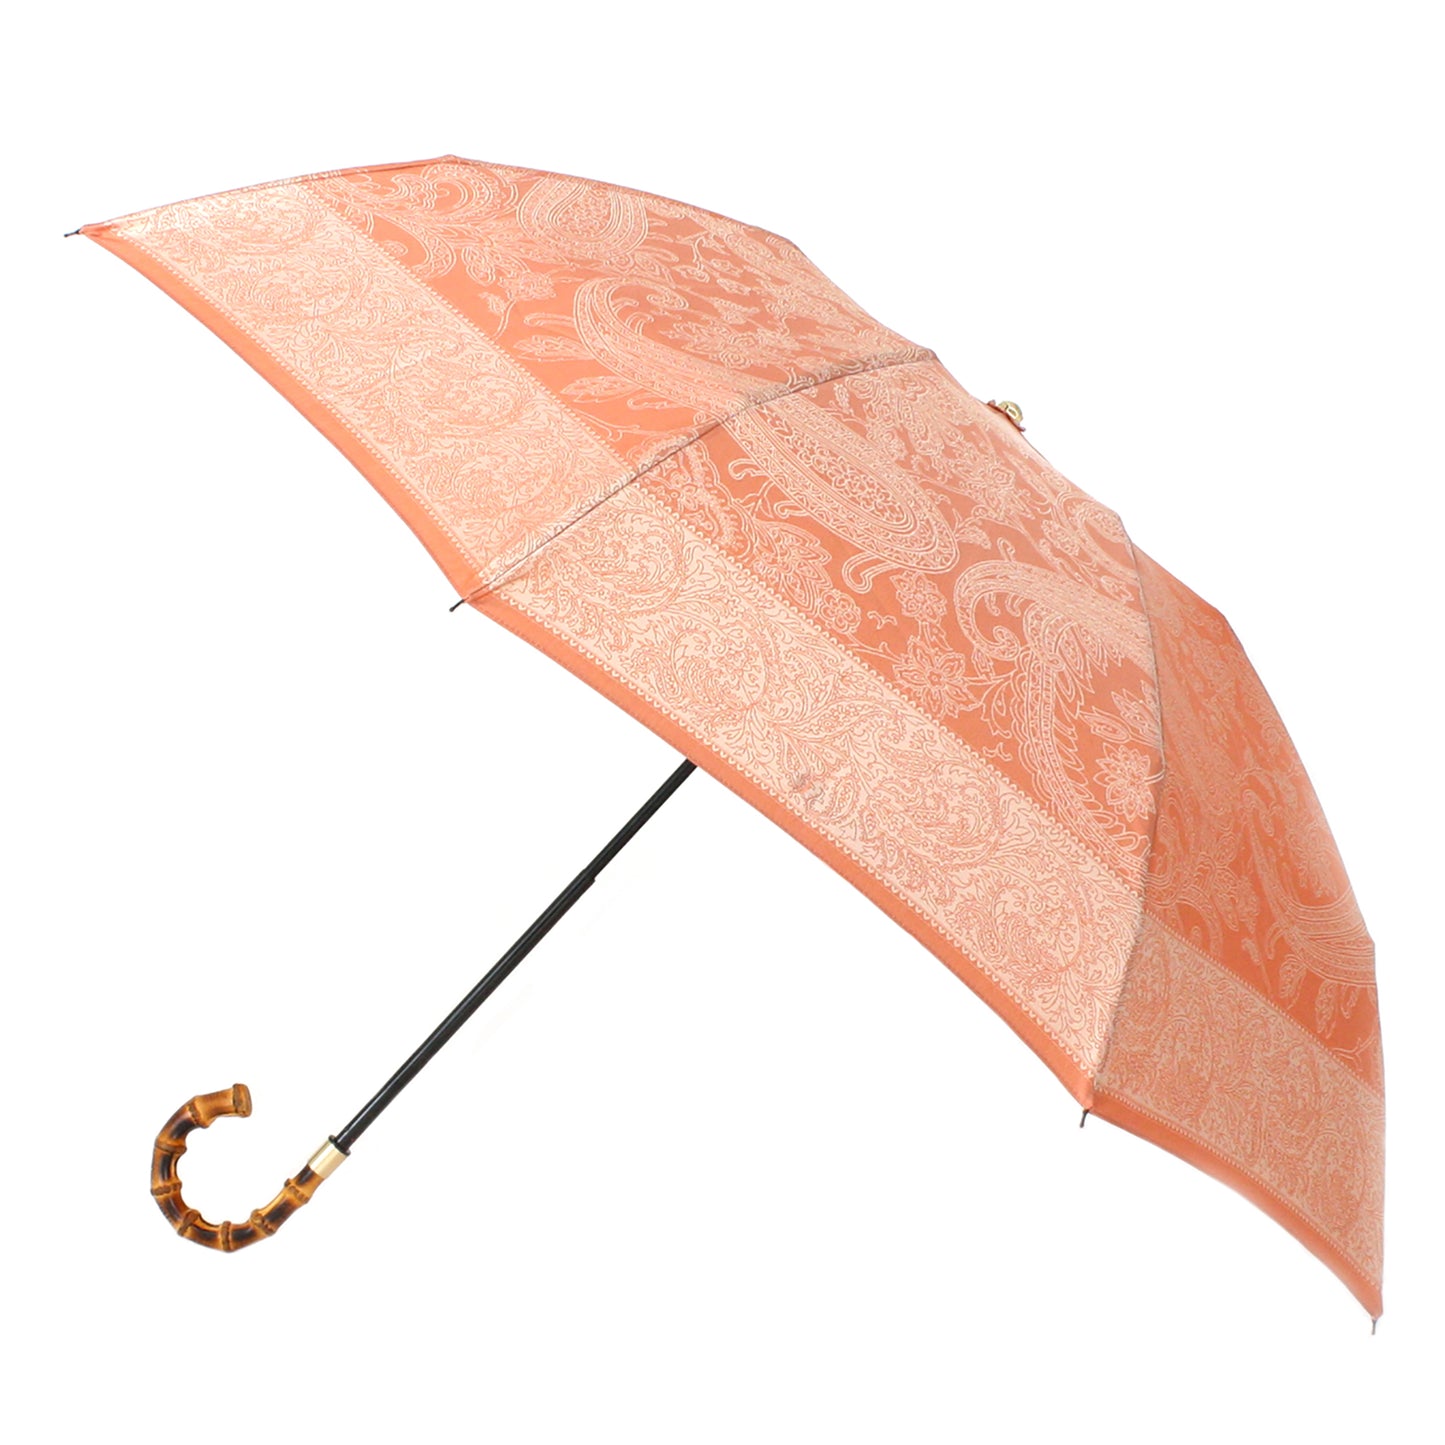 Anti-UV Rain & Sun Umbrella  "Kirie Paisley"